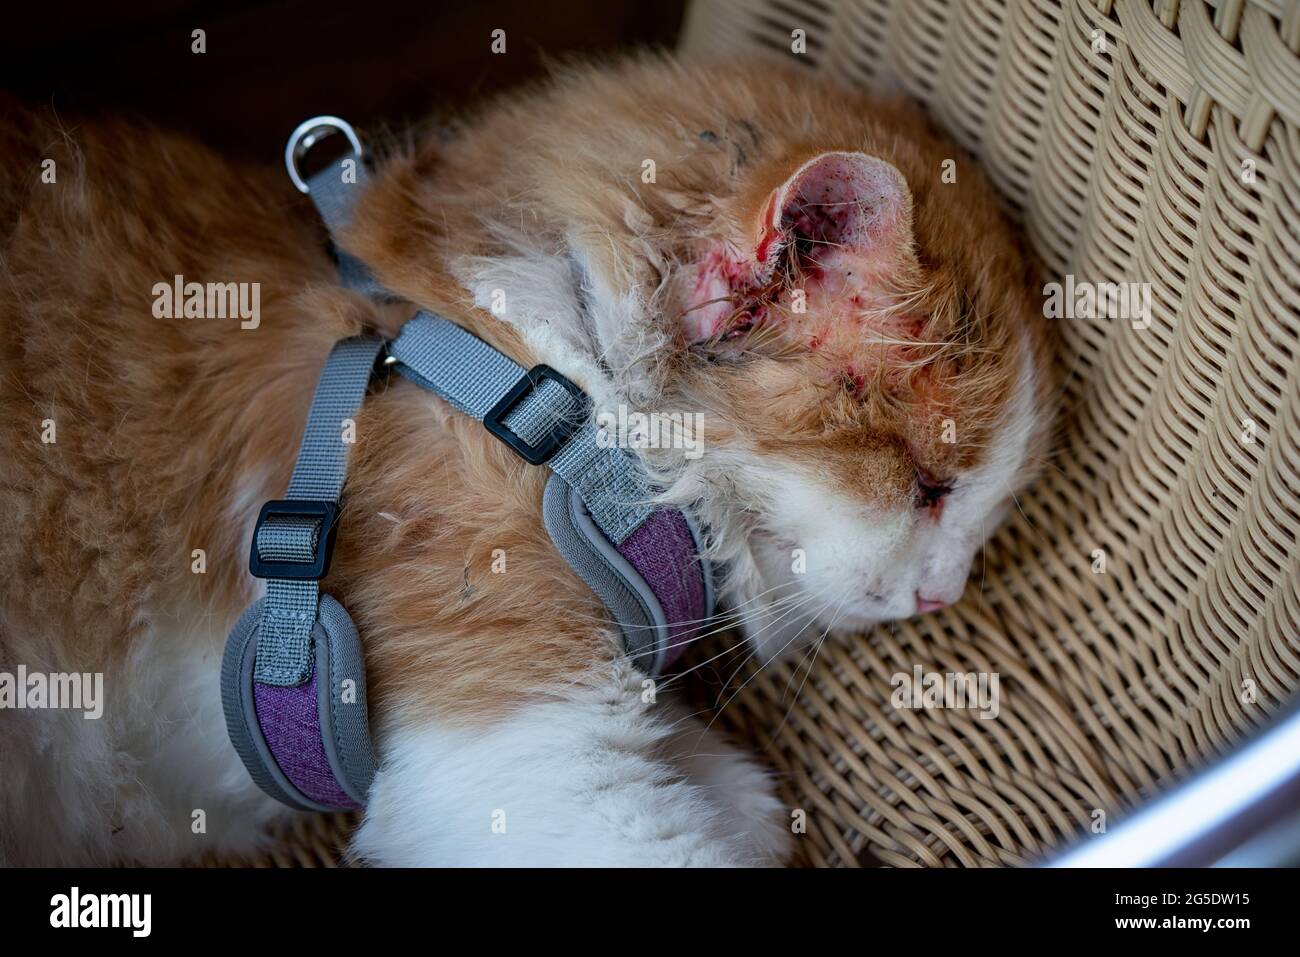 Katze, verletzt nach einem Kampf mit einer anderen Katze, liegt aus nächster Nähe auf einem Korbsessel. Im Bereich des Ohres ist alles mit Blut bedeckt, das Auge ist schwül Stockfoto